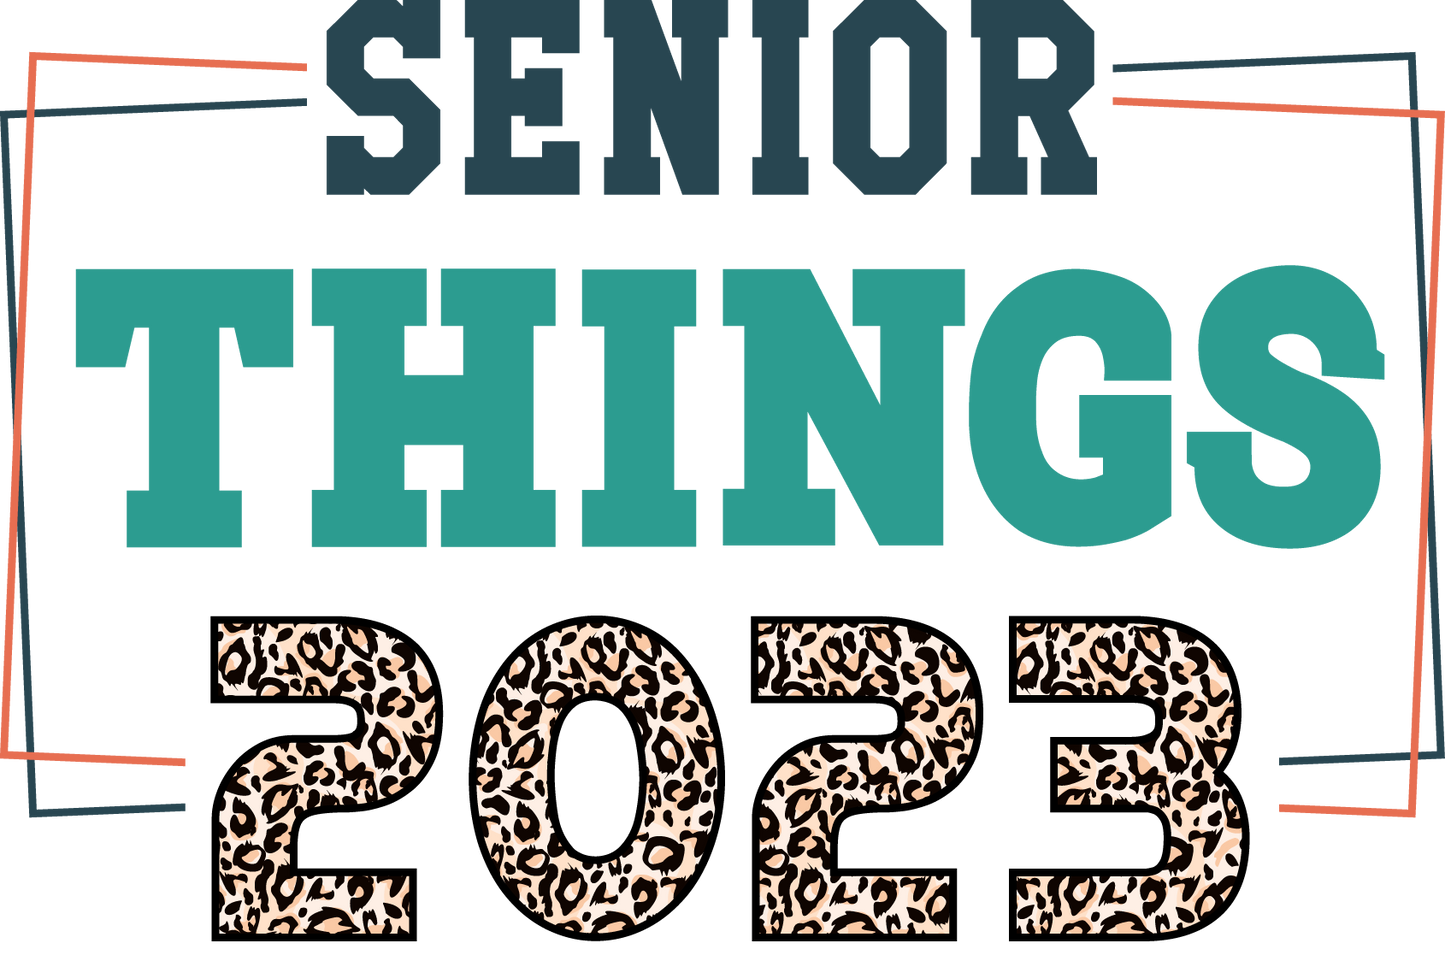 Senior Things leopard 2023 Design Transfer